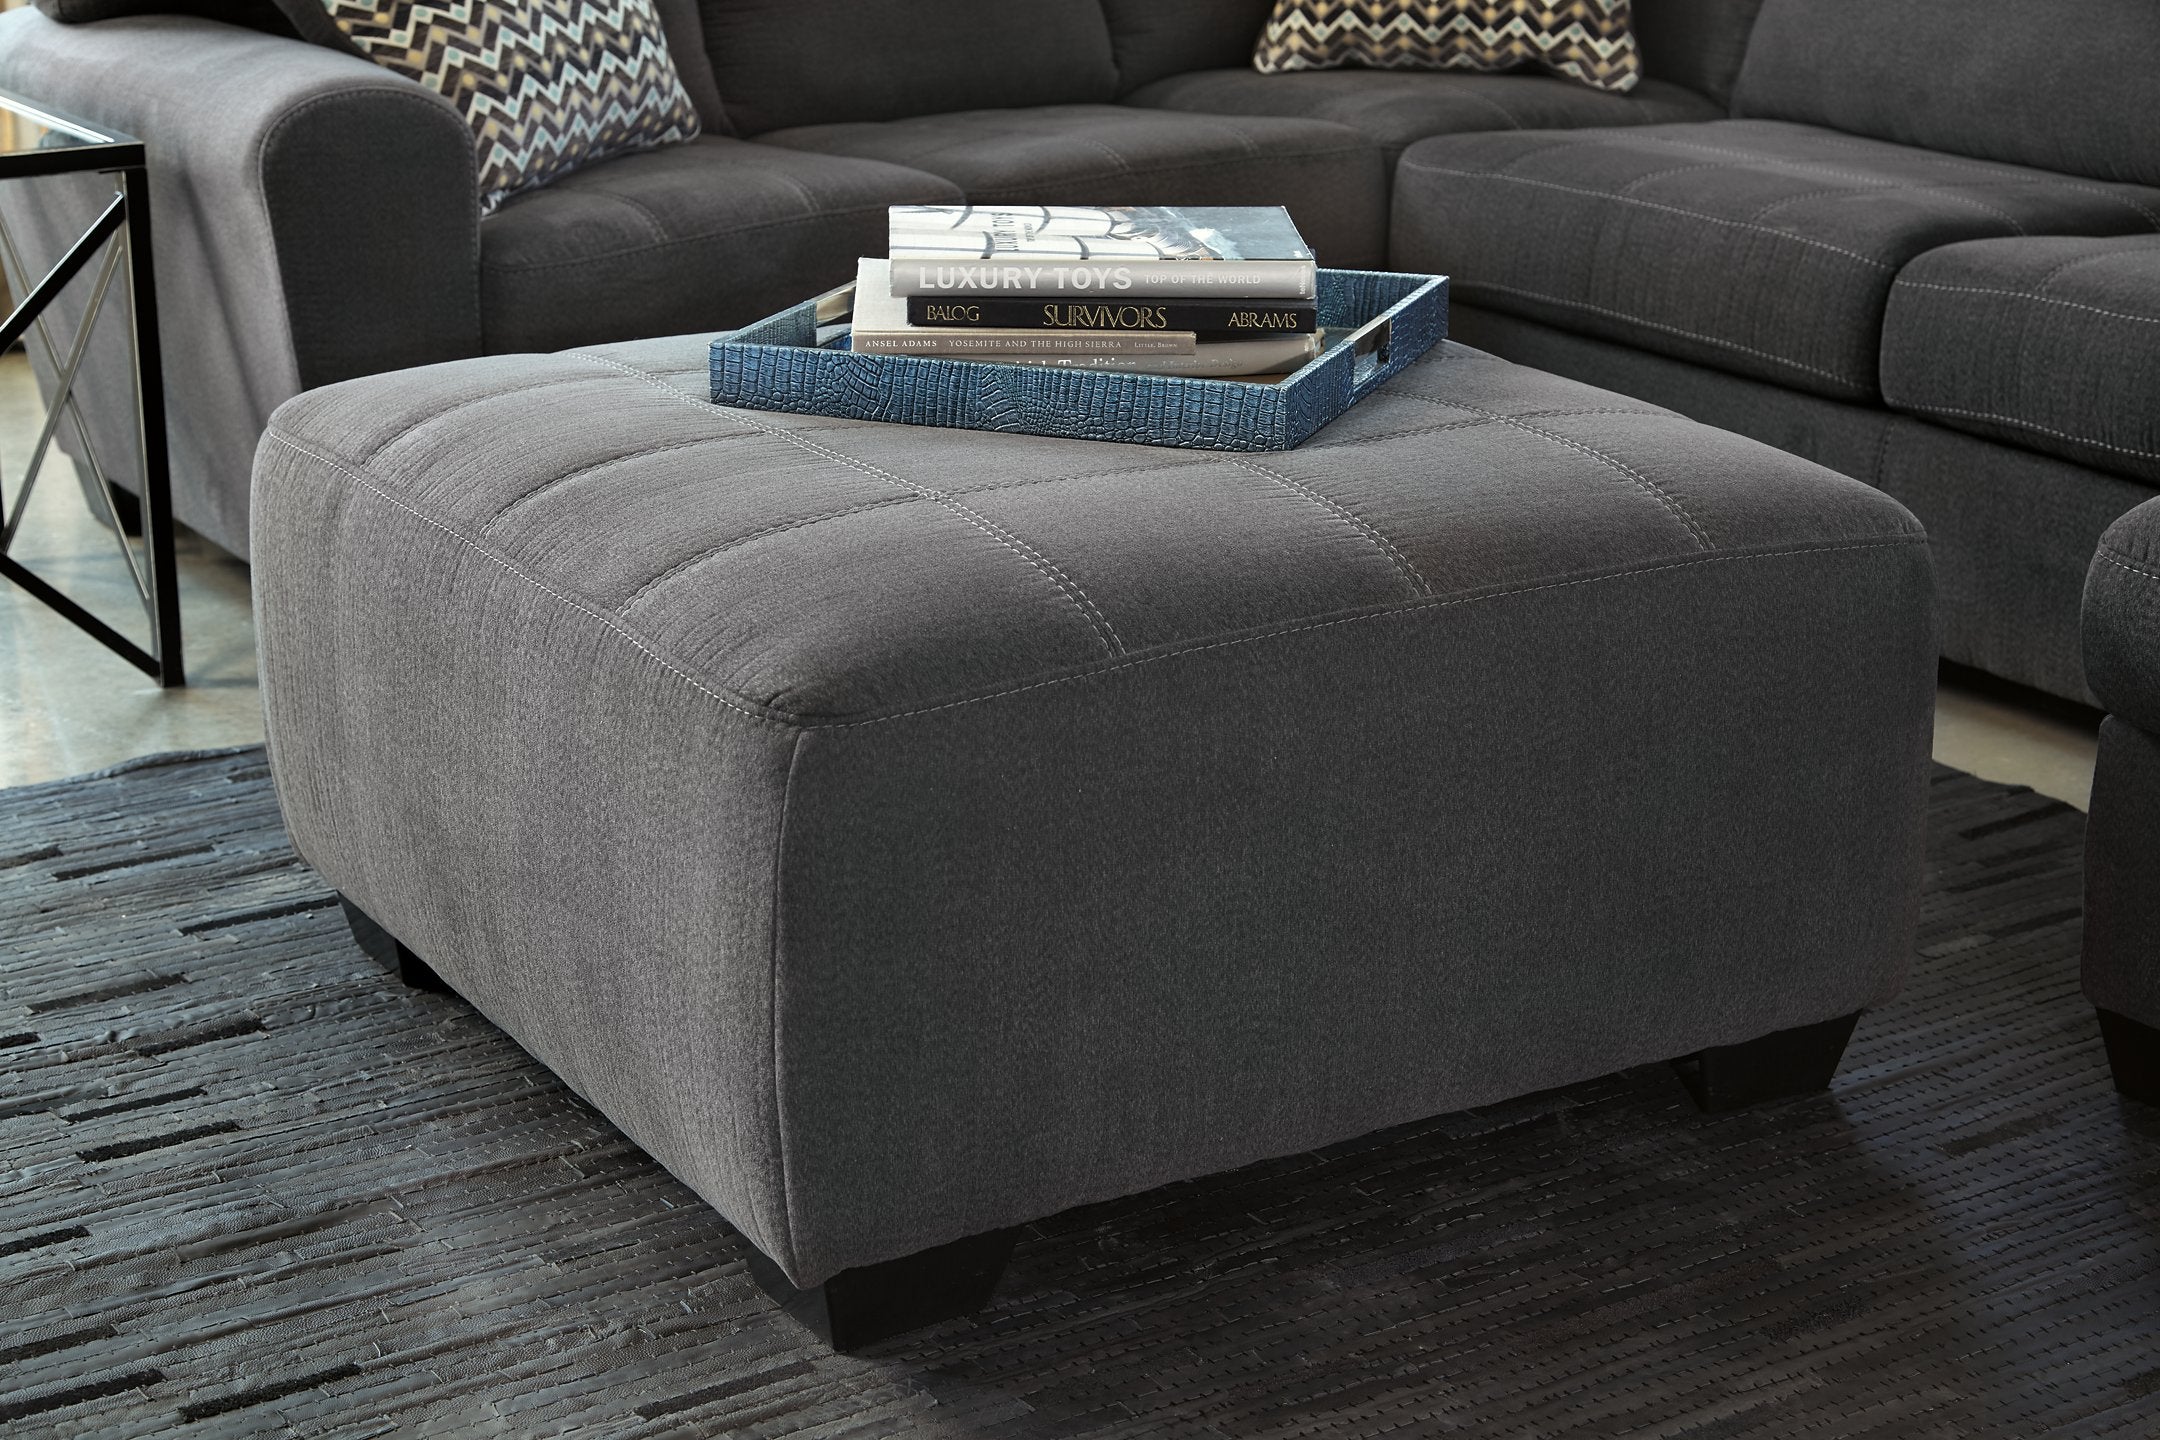 Ambee Living Room Set - Luxury Home Furniture (MI)